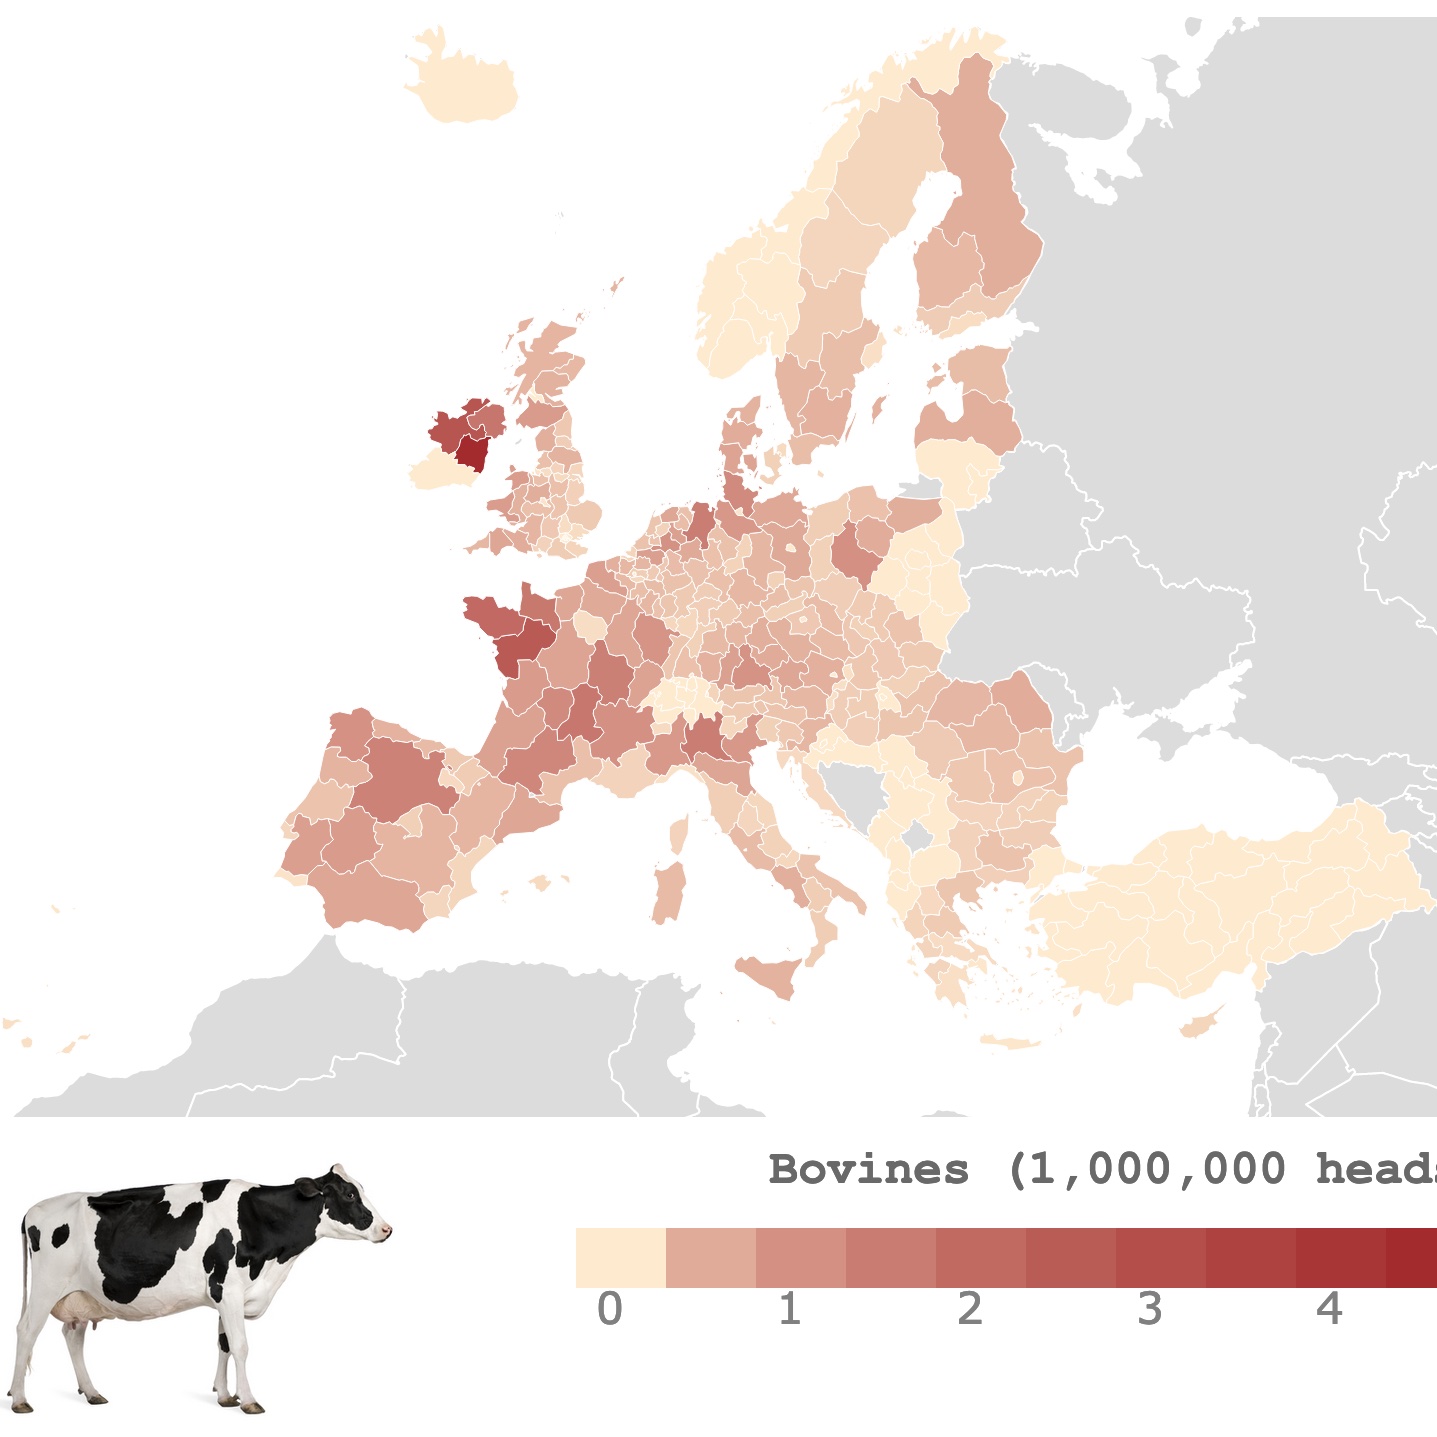 European Bovine Density Map